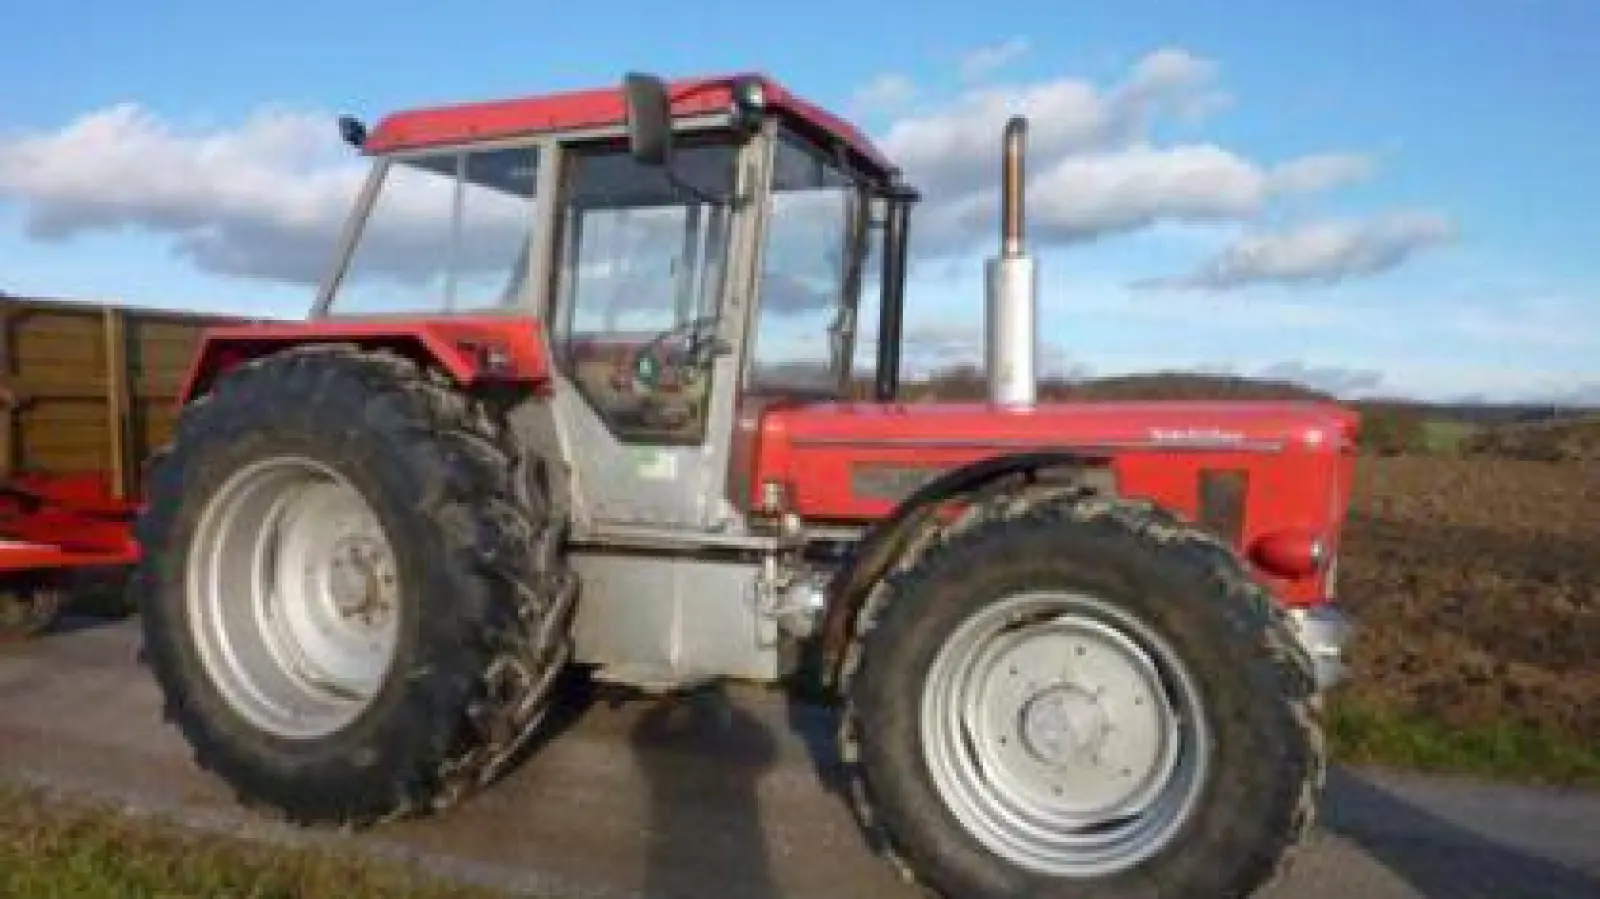 Ein Traktor   wie dieser soll angeblich zu einem Schnäppchenpreis verkauft werden - doch damit versuchen Betrüger, Landwirte um ihr Geld zu bringen.